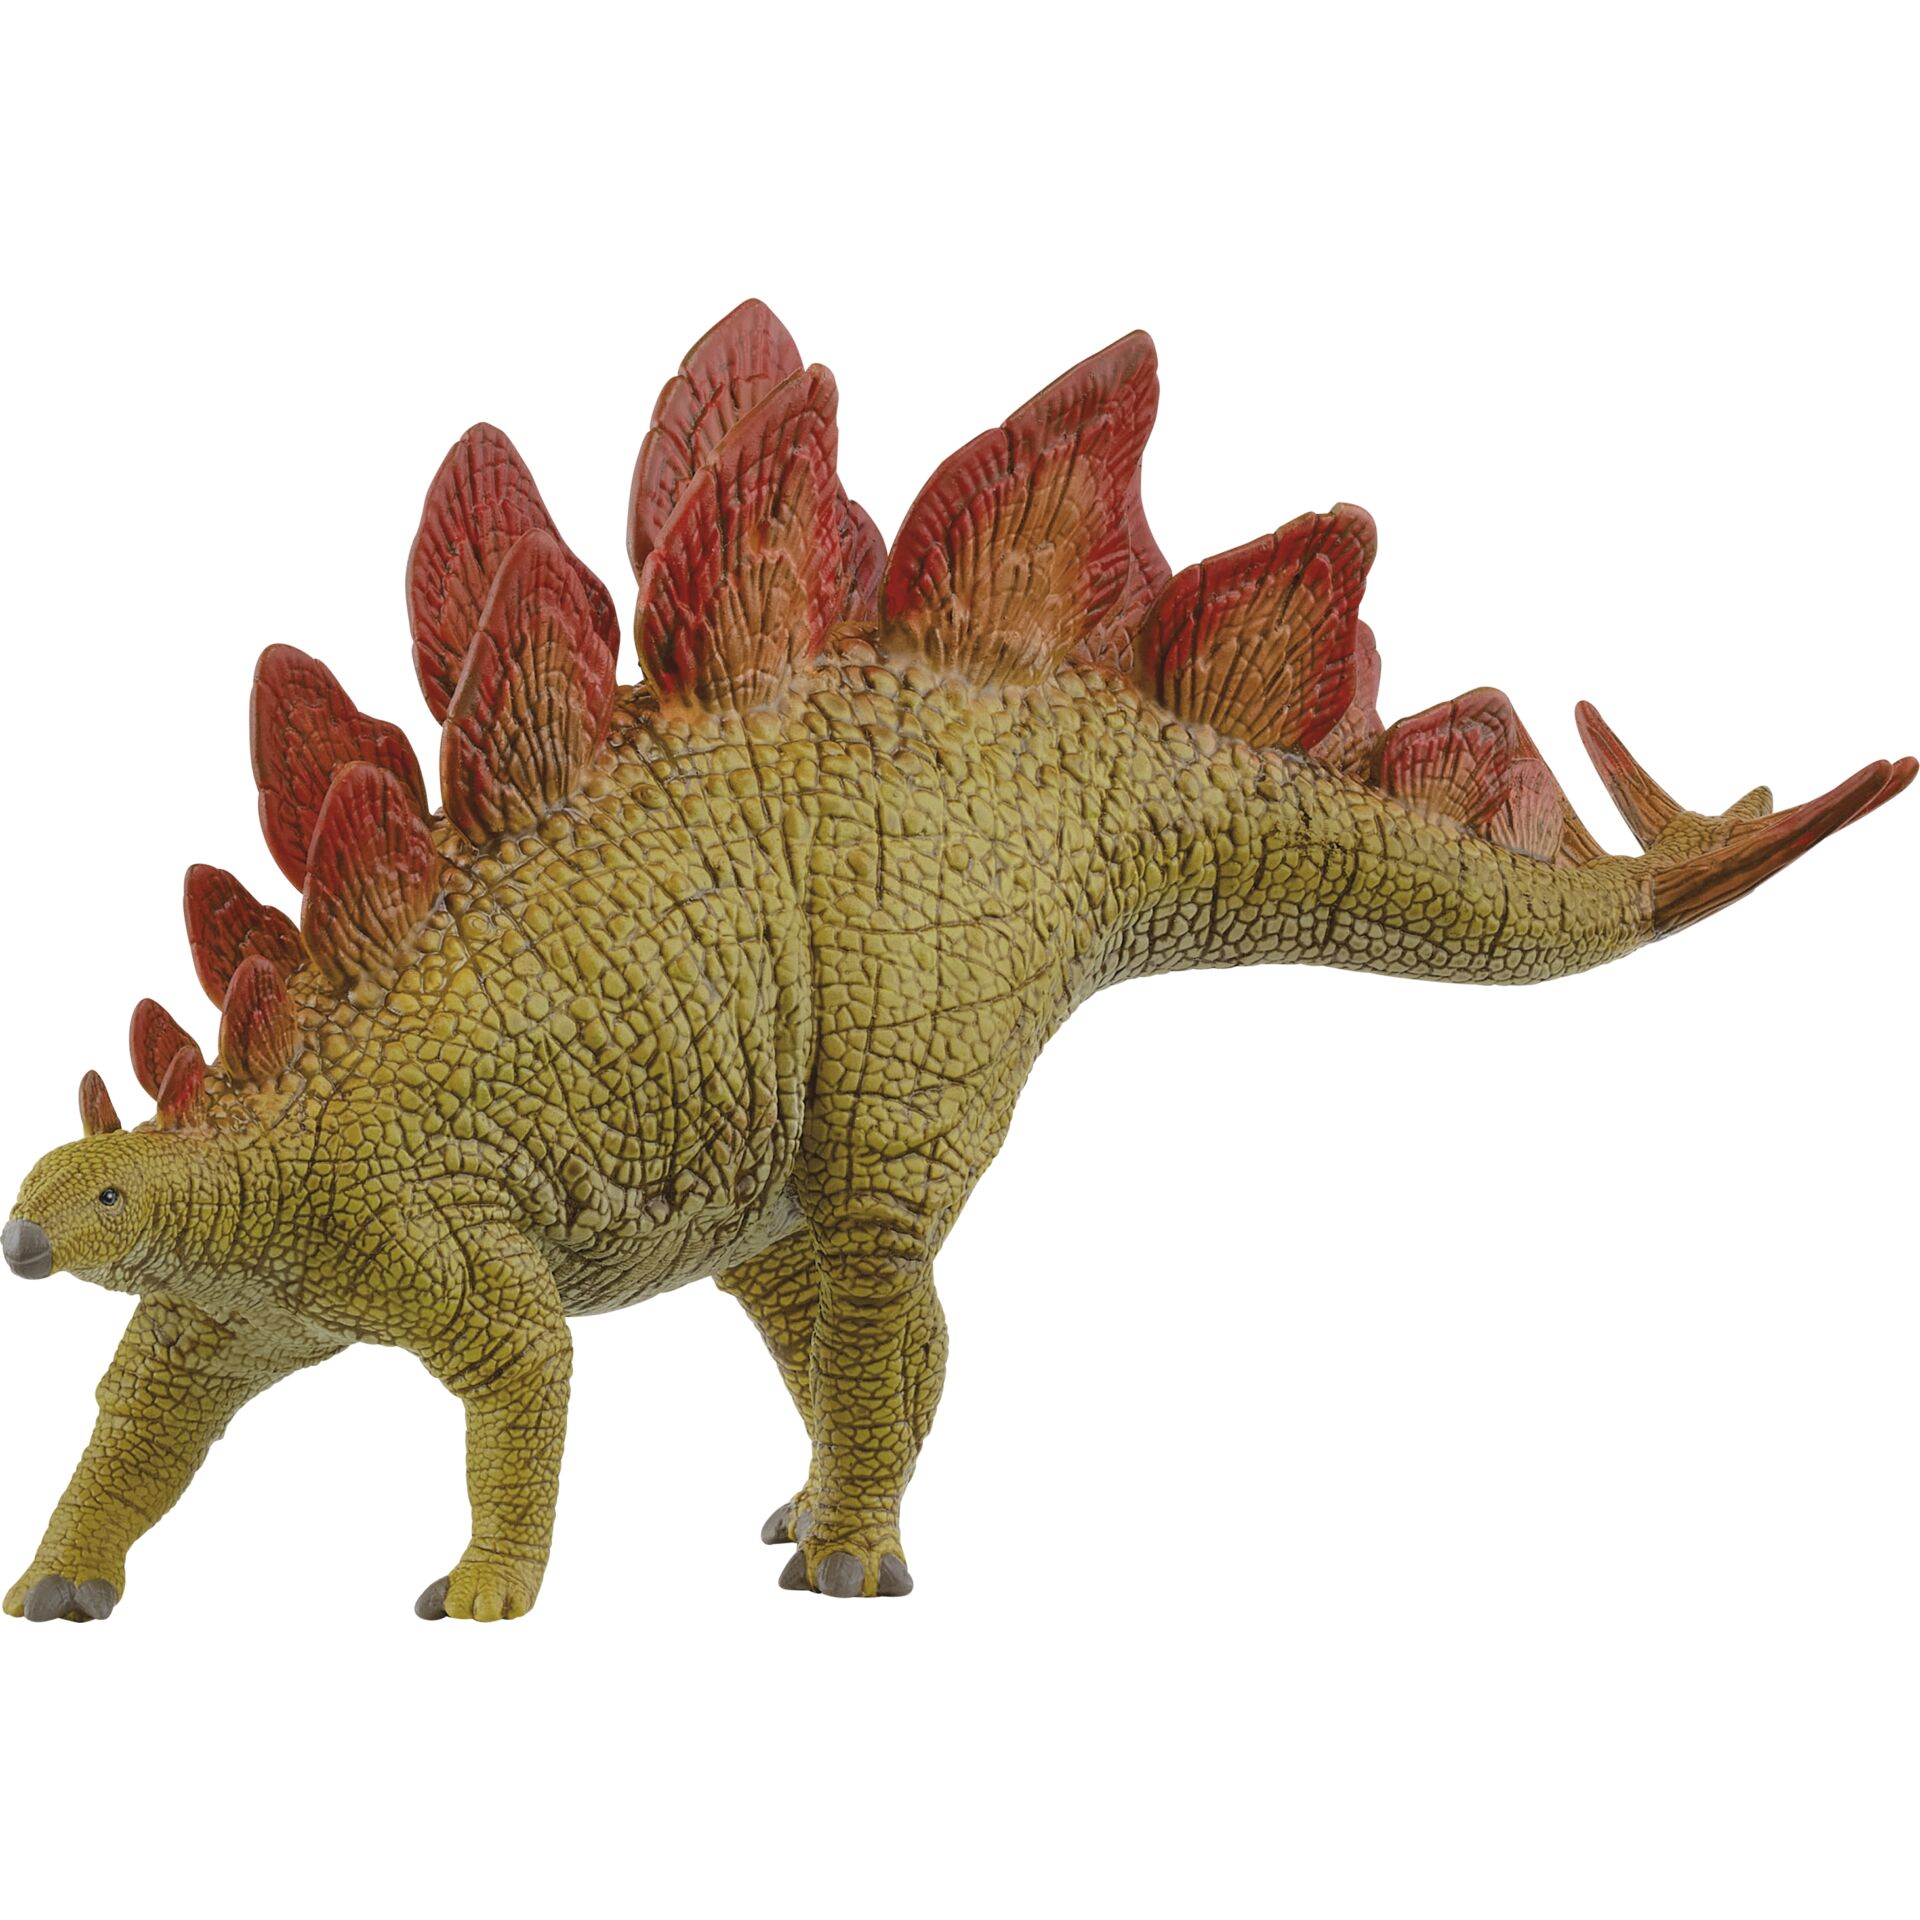 Schleich Dinosaurs         15040 Stegosaurus